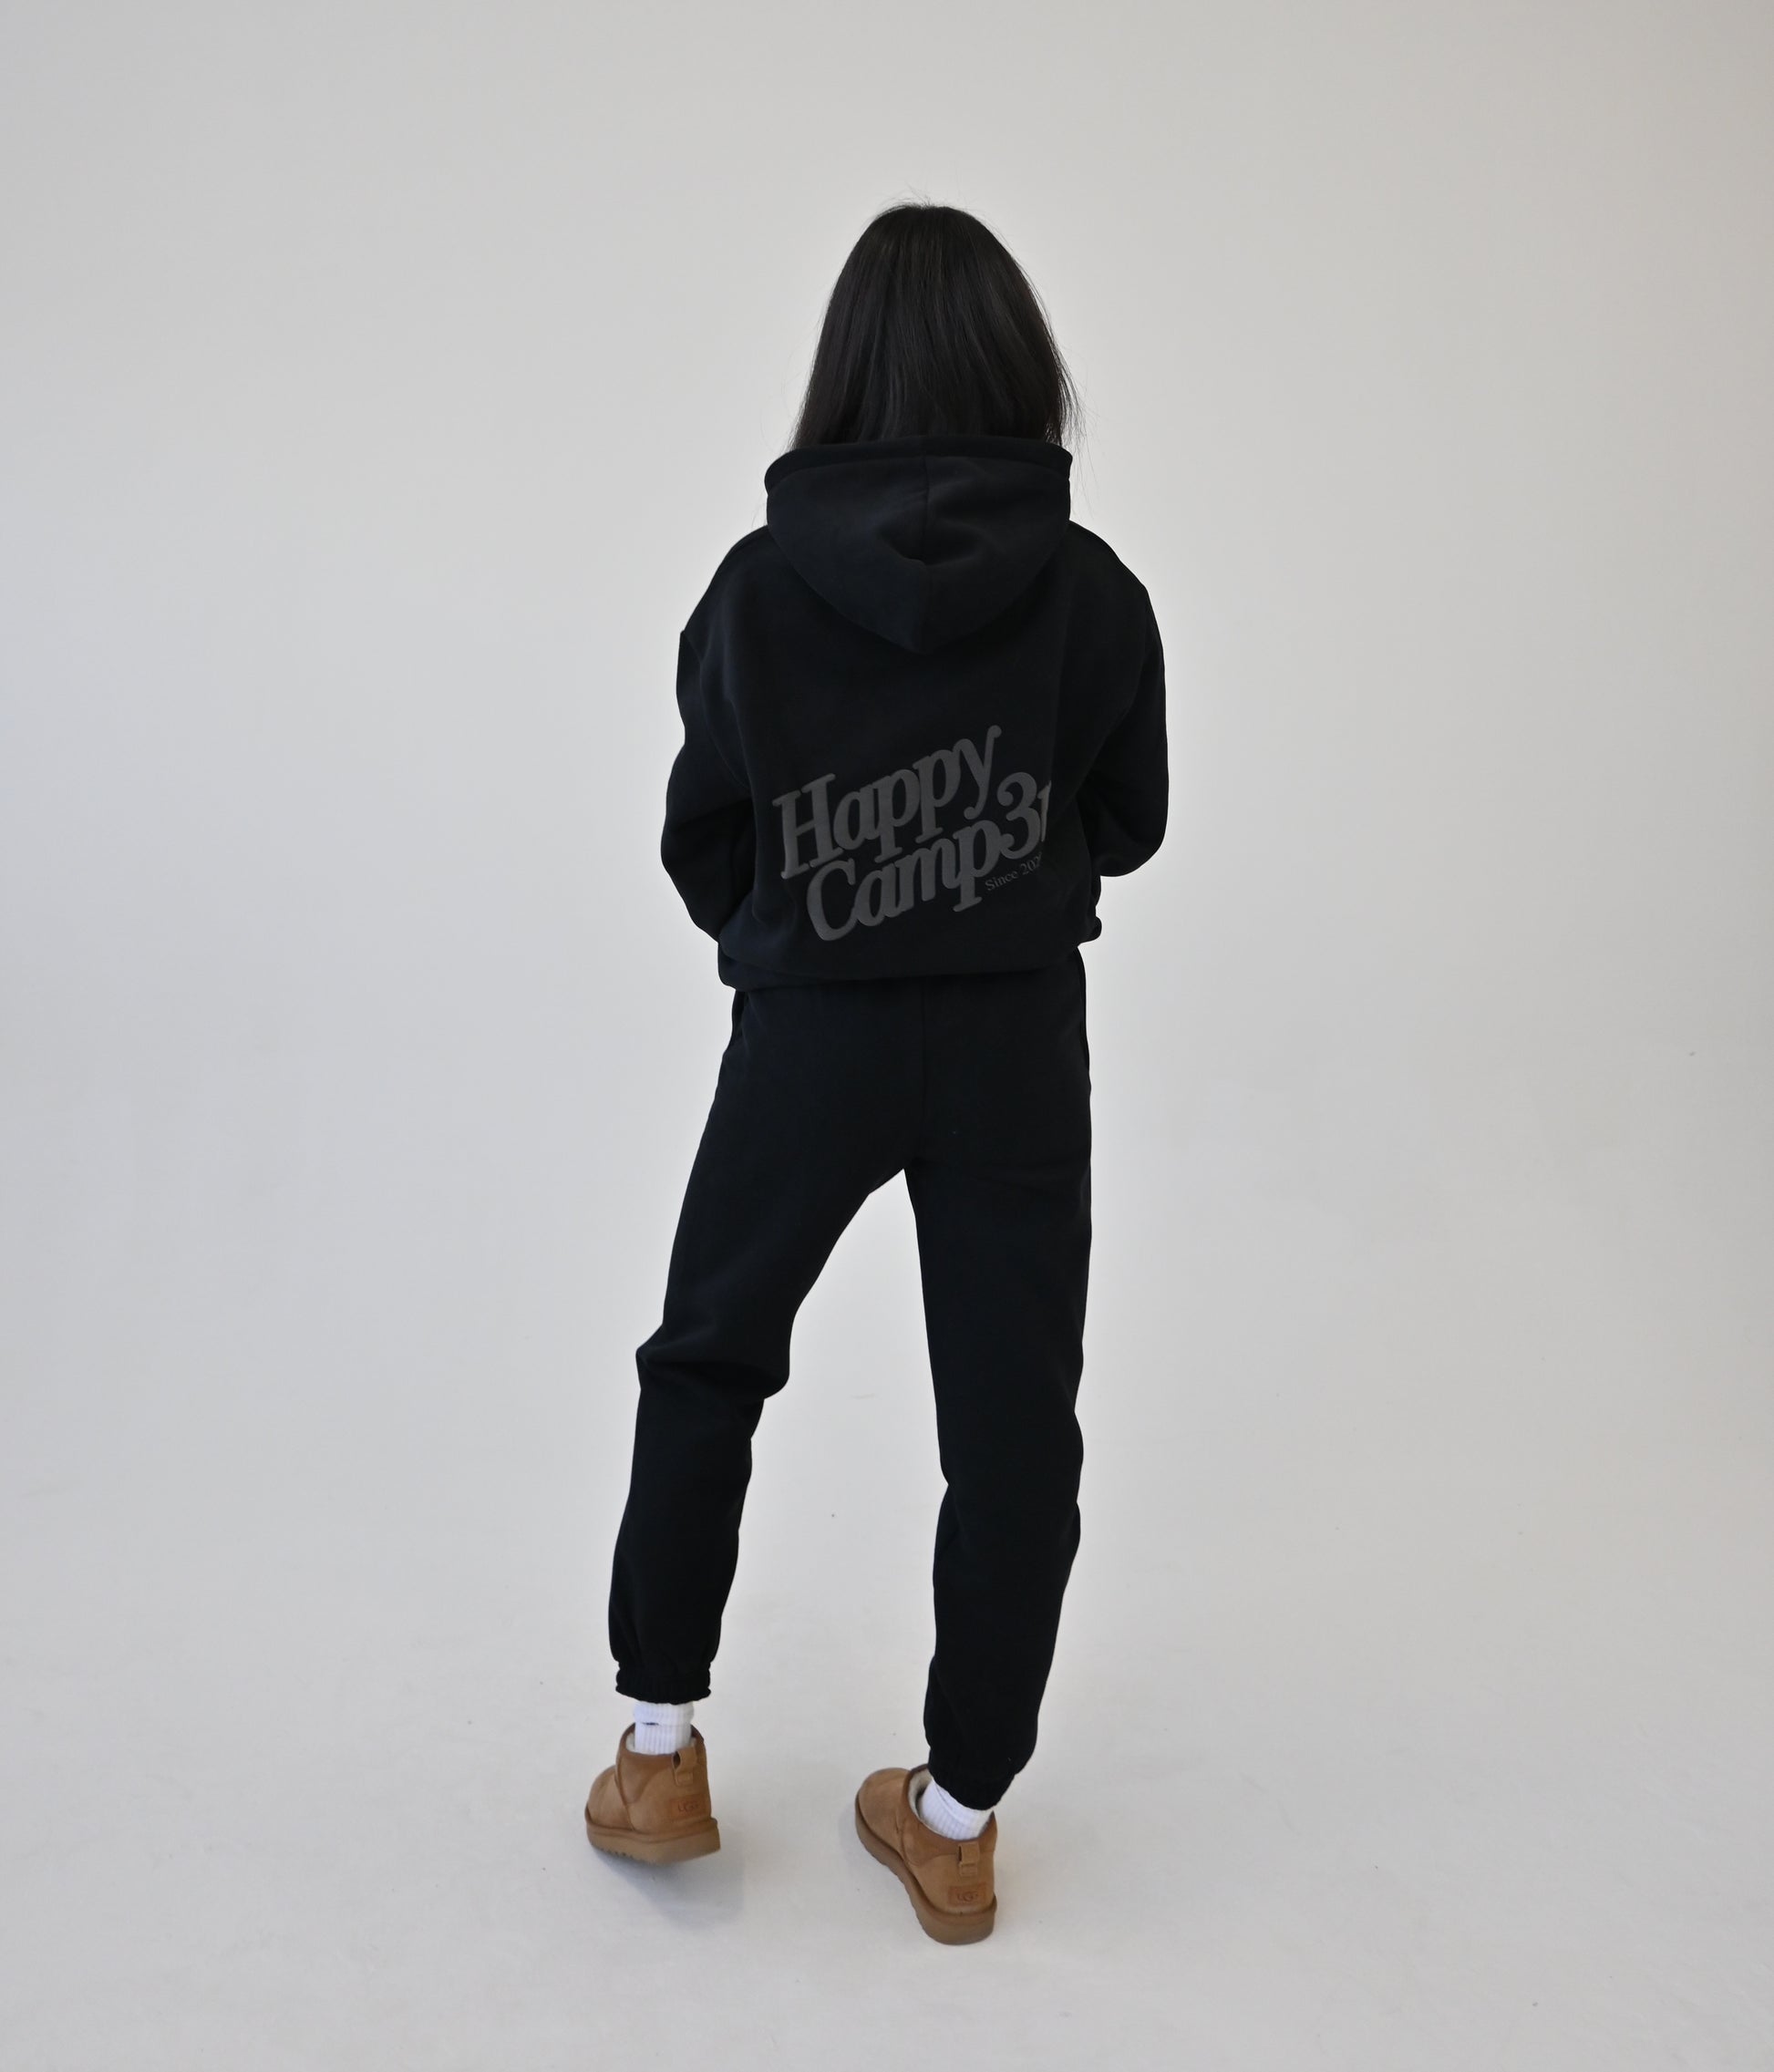 Puff Series Hoodie - Black – The Happy Camp3r